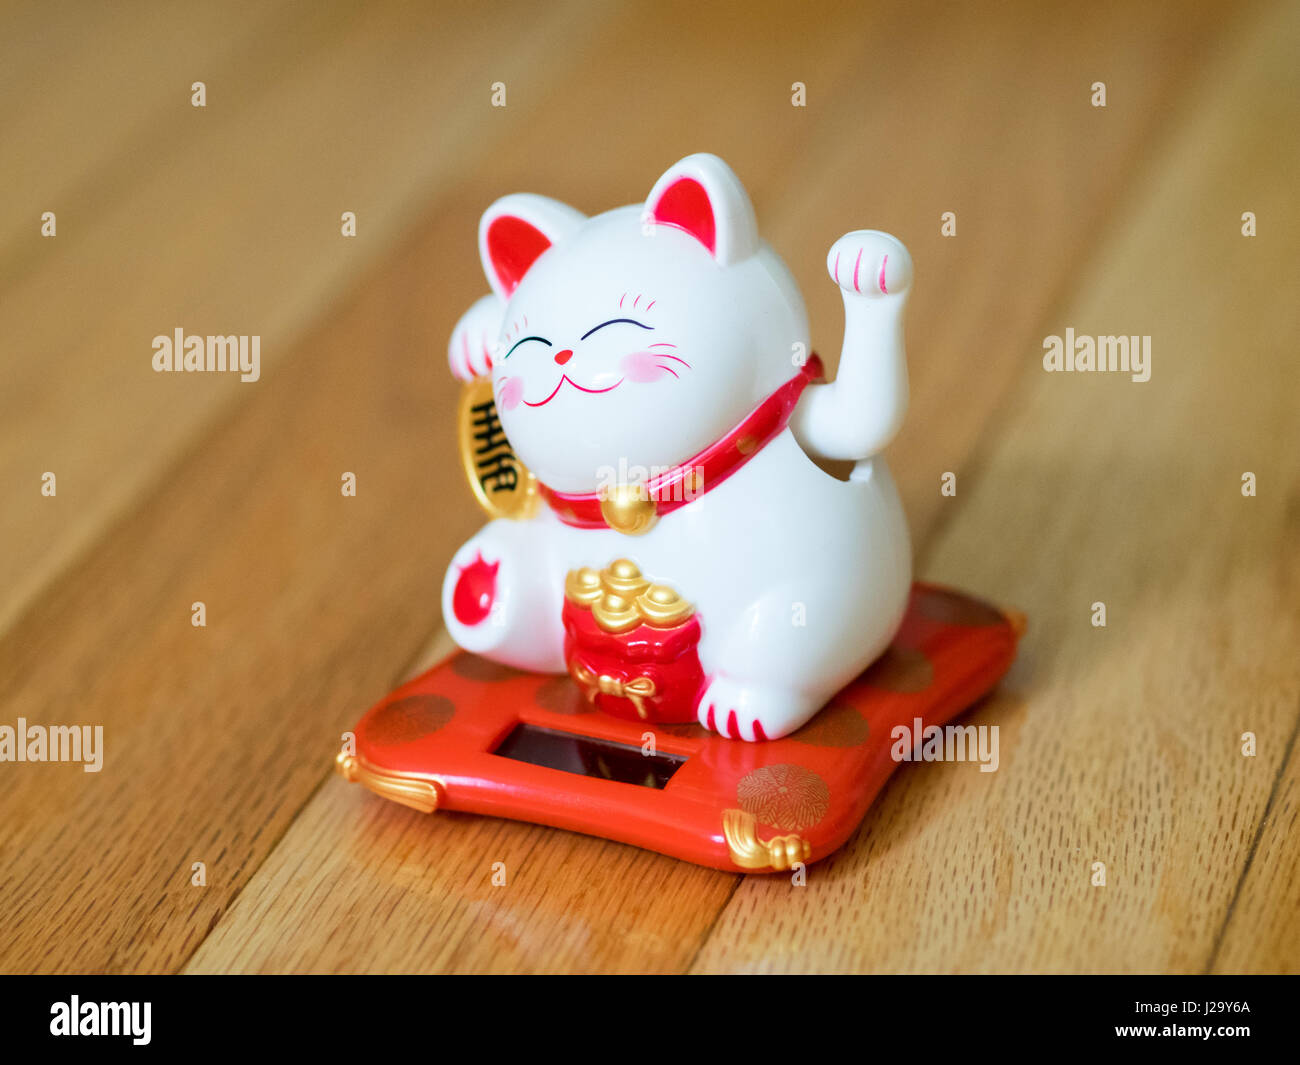 Un maneki-neko (littéralement, "signe cat' en japonais, également connu sous le nom de lucky cat, cat, ou de chance Chinois heureux cat) du prince. Un porte-bonheur. Banque D'Images